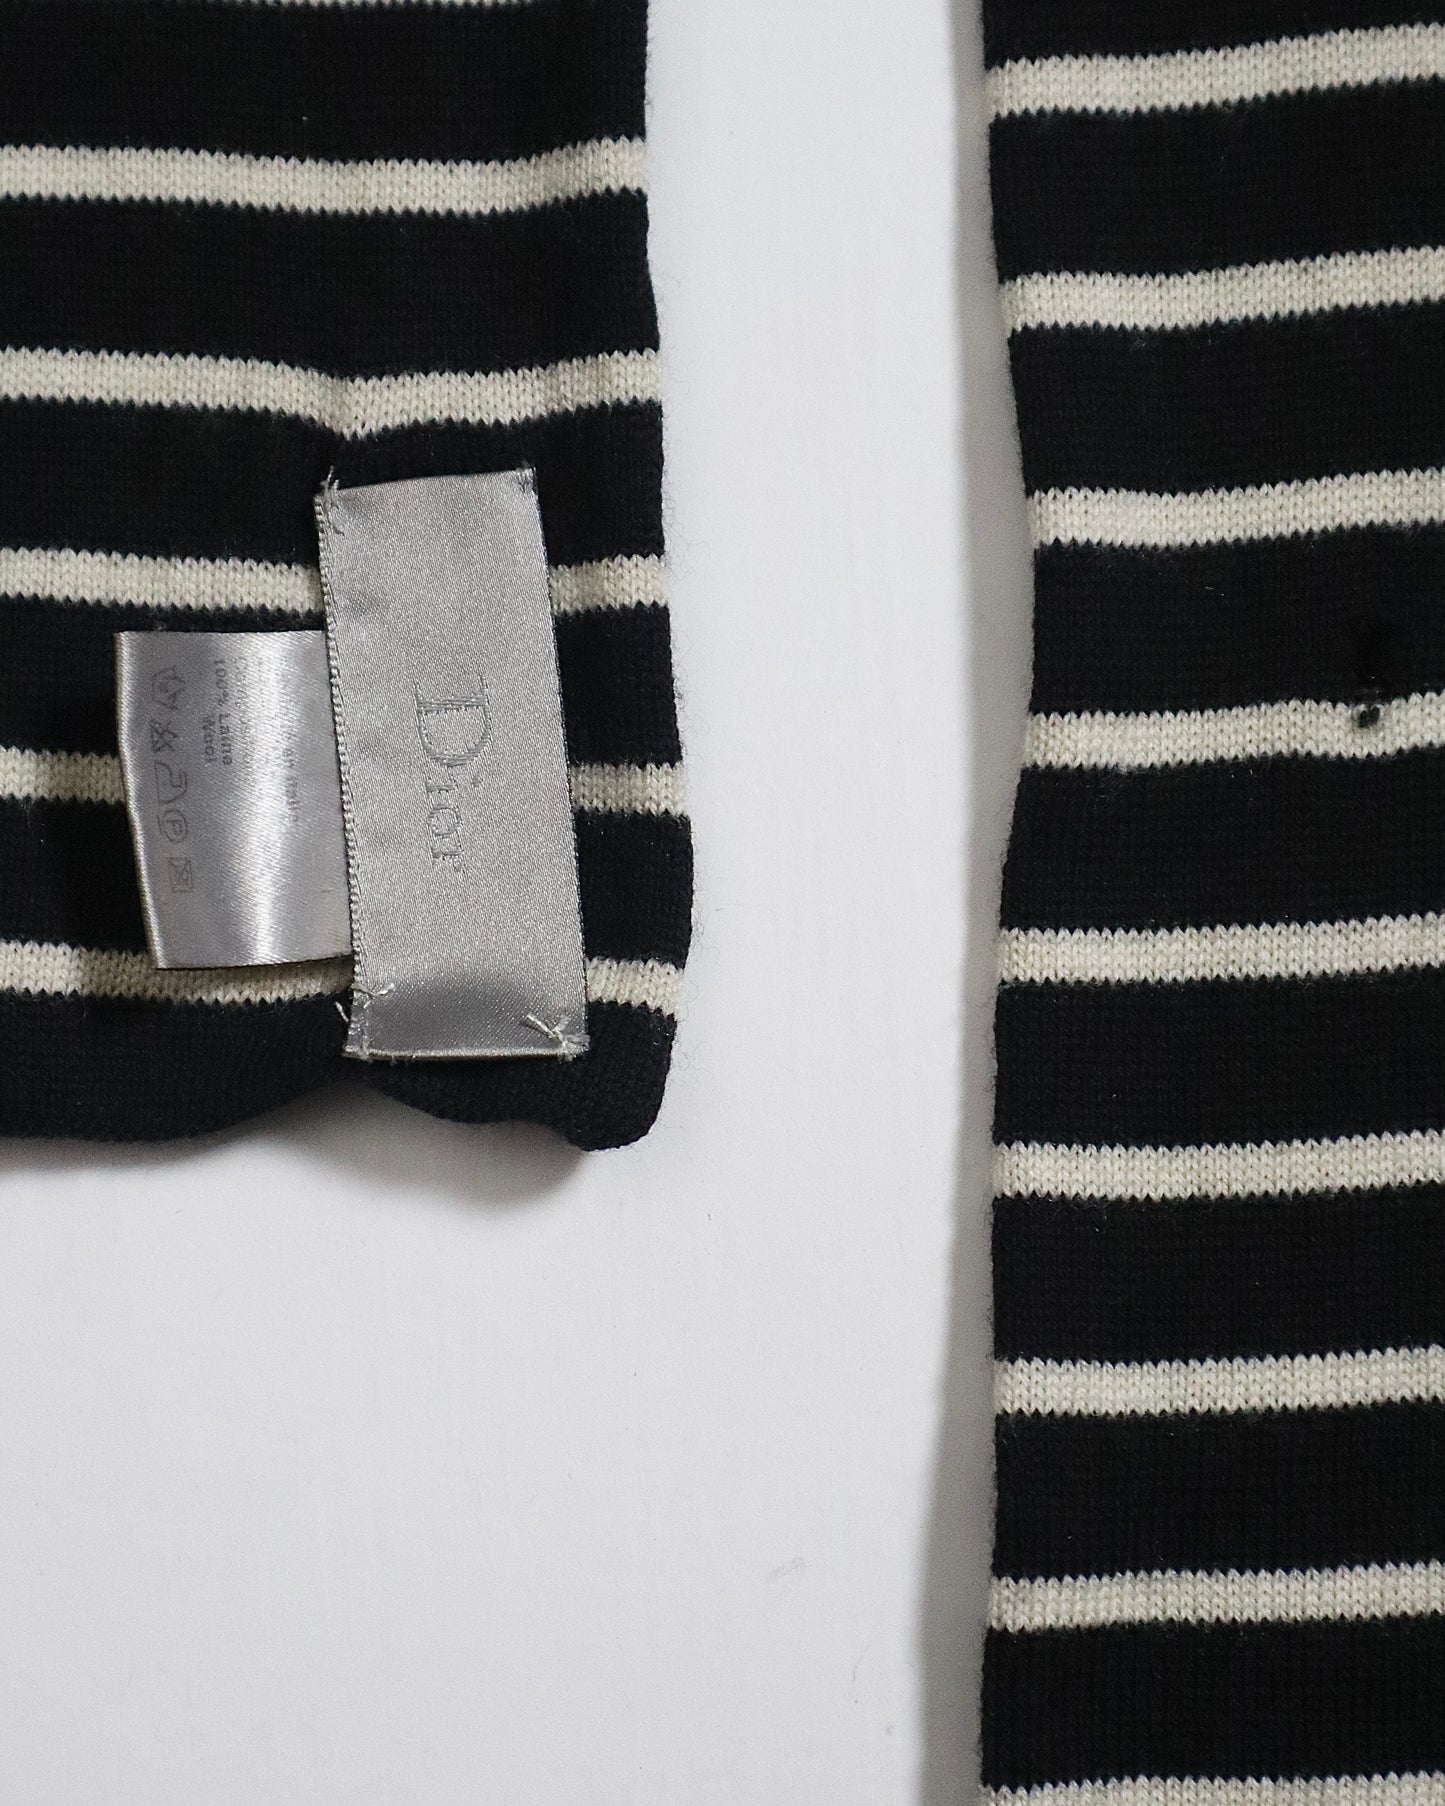 Dior Striped Wool Scarf